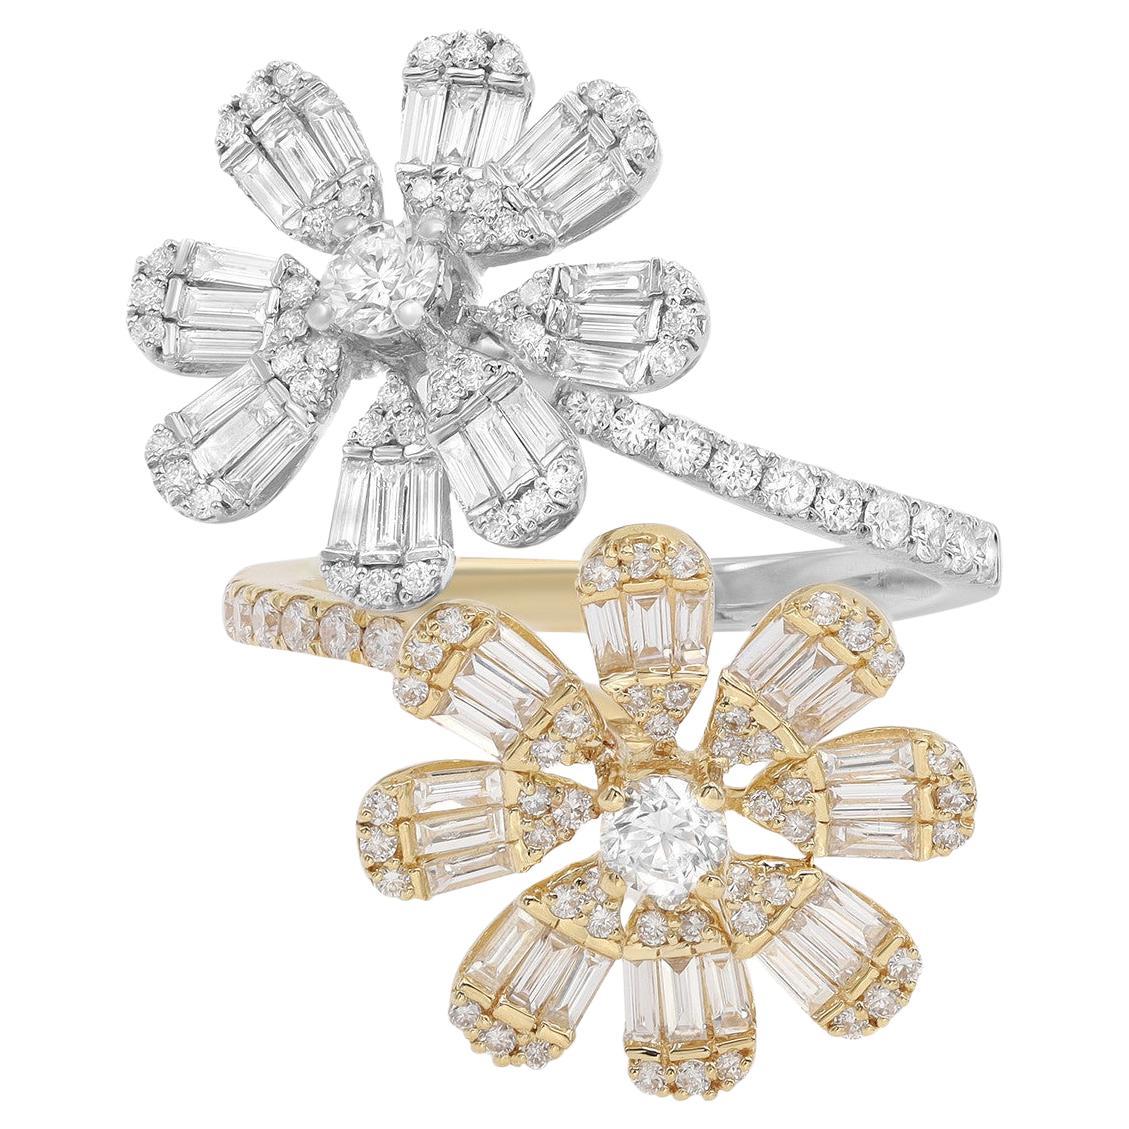 1.56 Pavé Diamond Flower Ring in 18K White & Yellow Gold